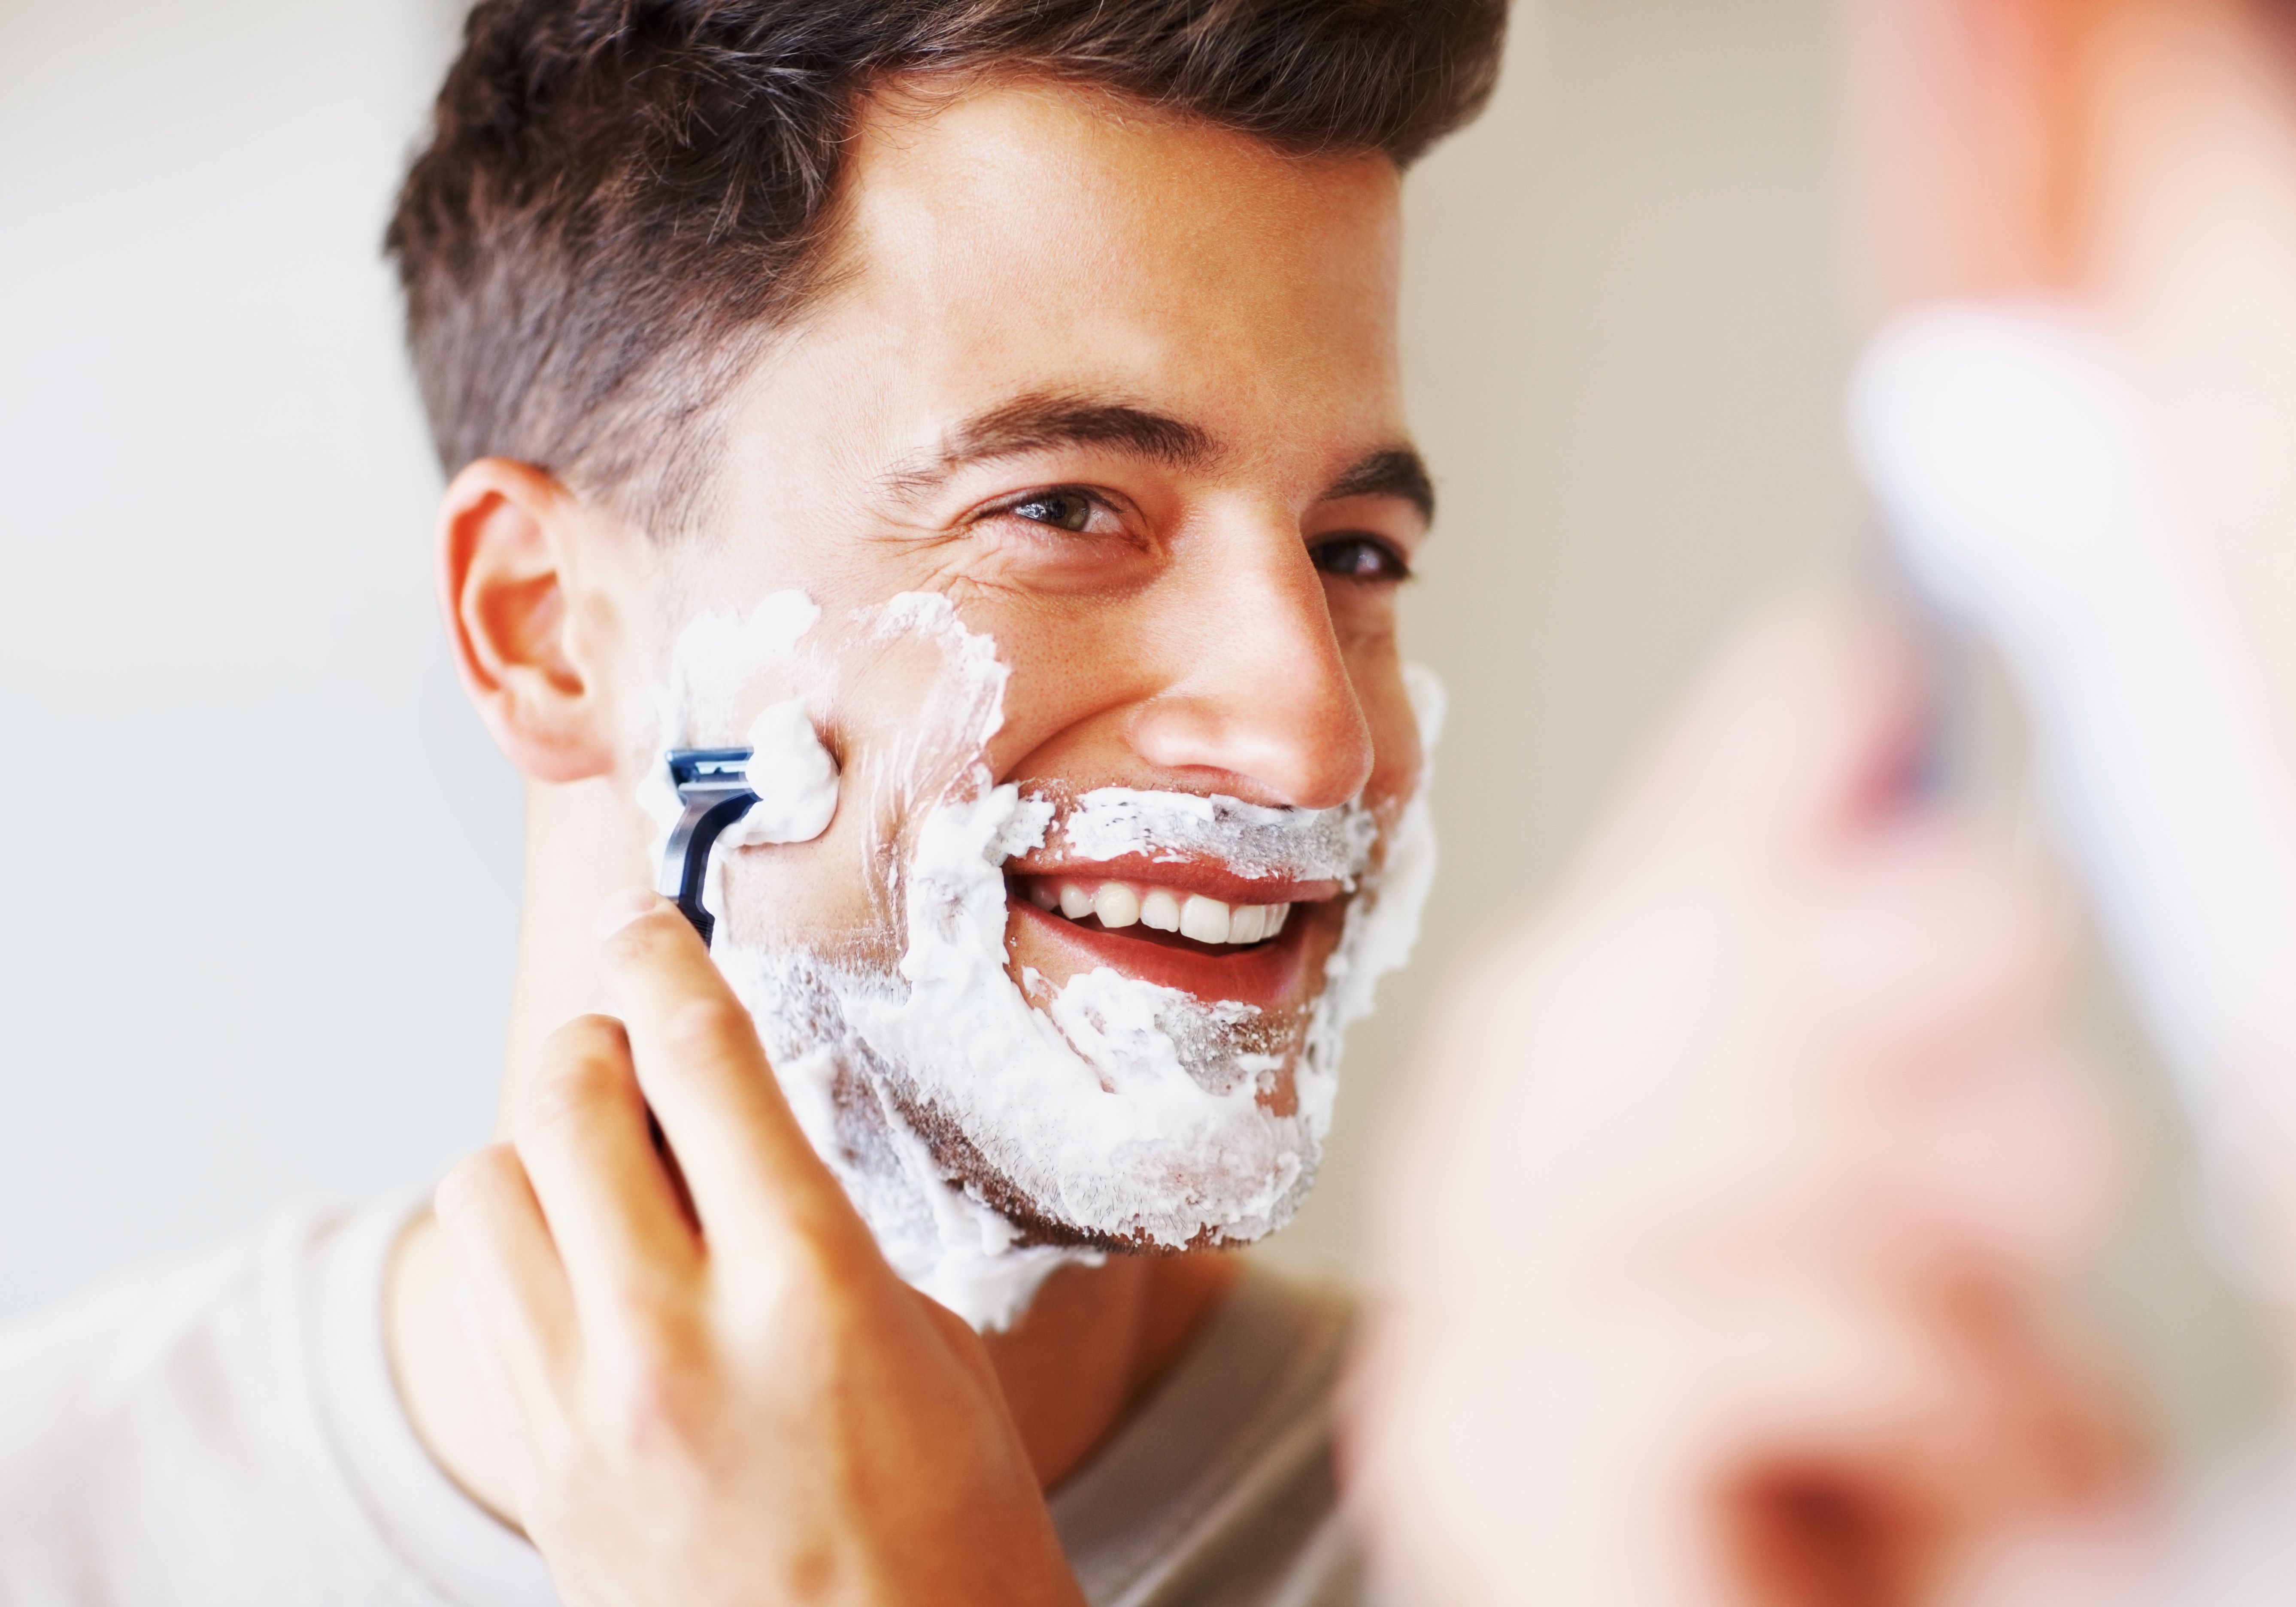 Бритье муж. Мужчина бреется. Бритва для мужчин. Мужское бритье лица. Фотосессия бритье.